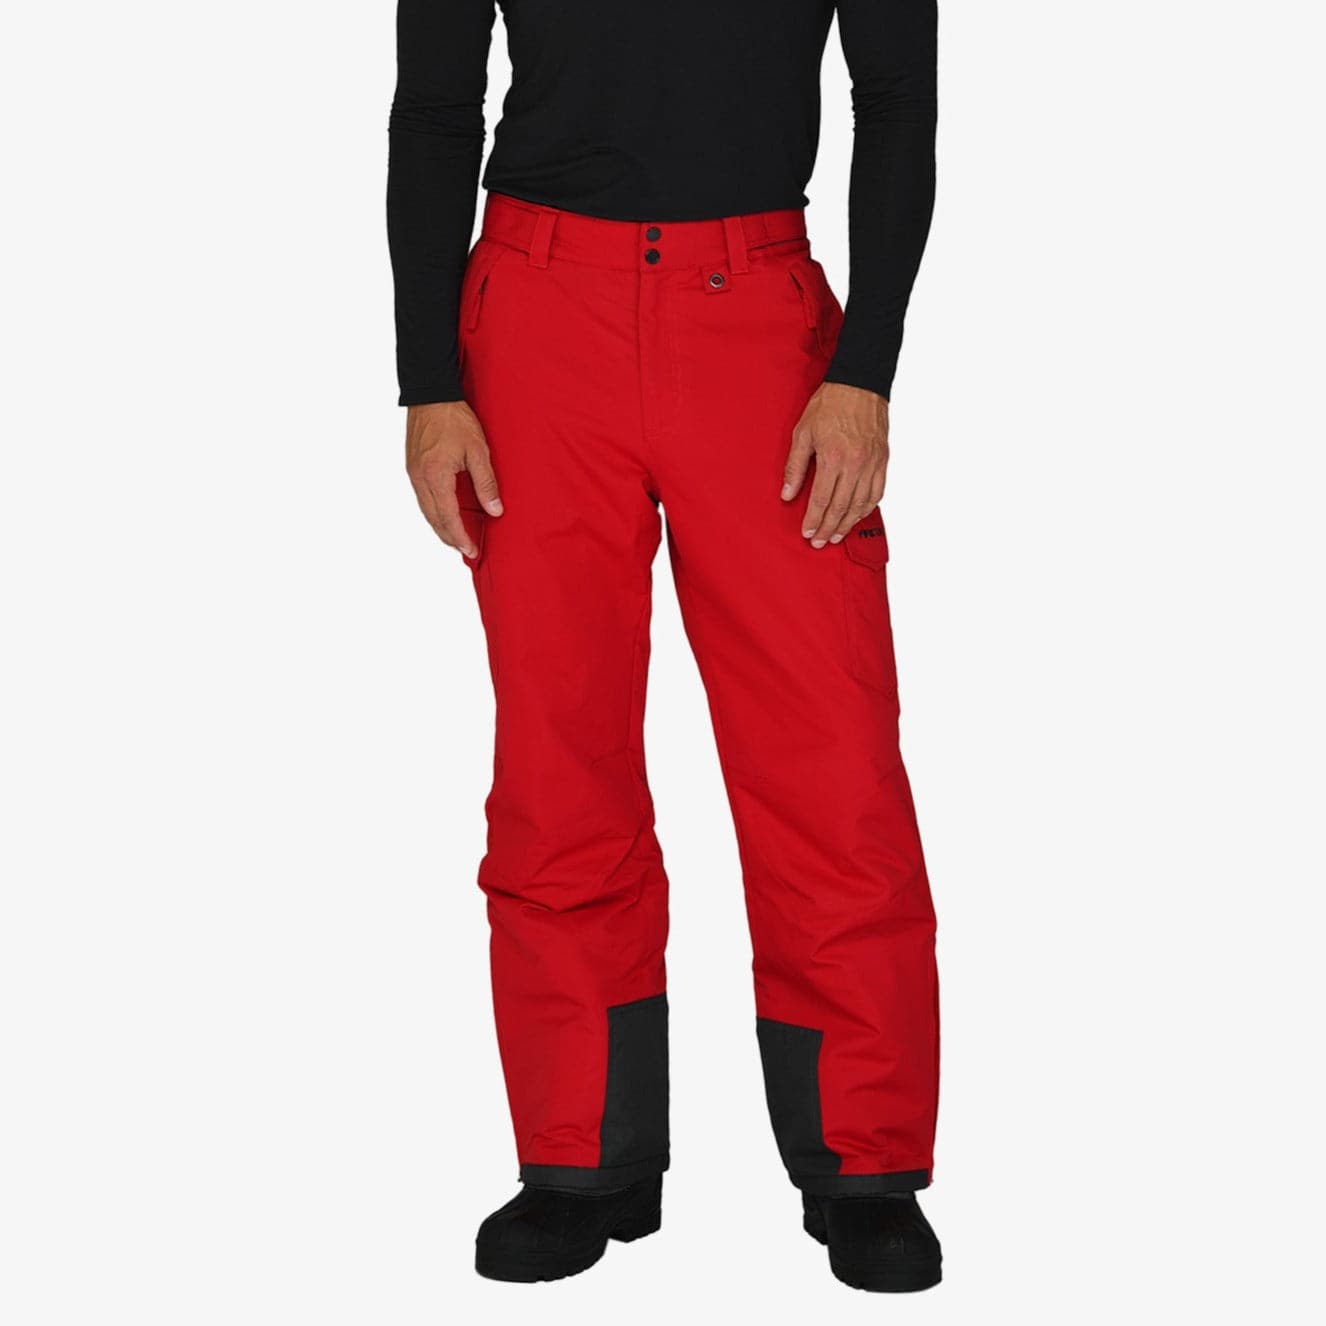 GetUSCart- Arctix Men's Snow Sports Cargo Pants, Black/Charcoal